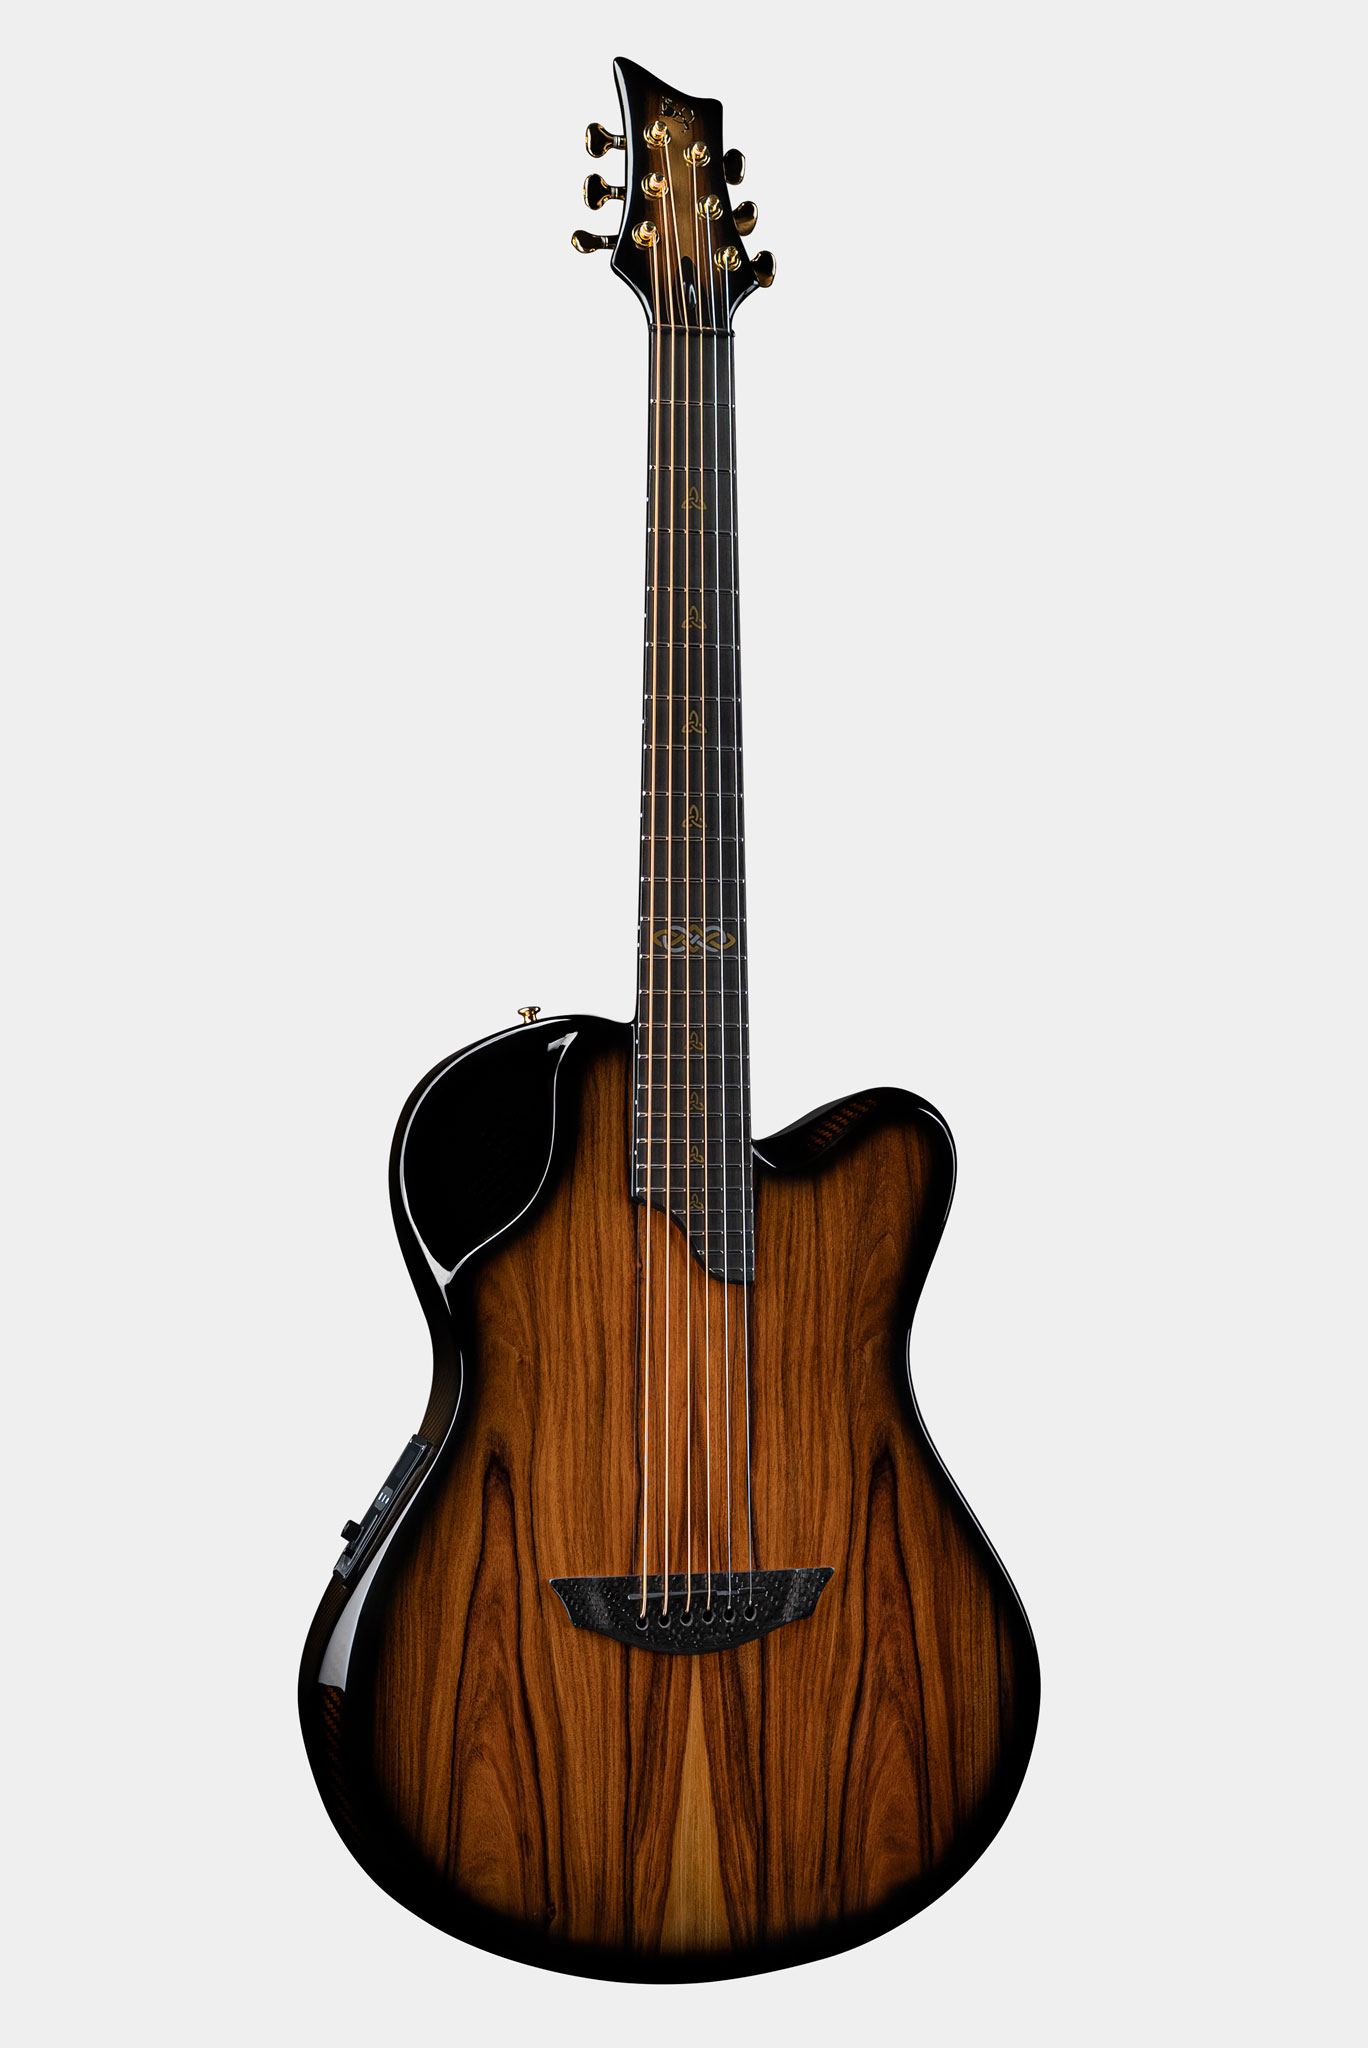 Emerald X20 Carbon Fiber Guitar in Pau Ferro